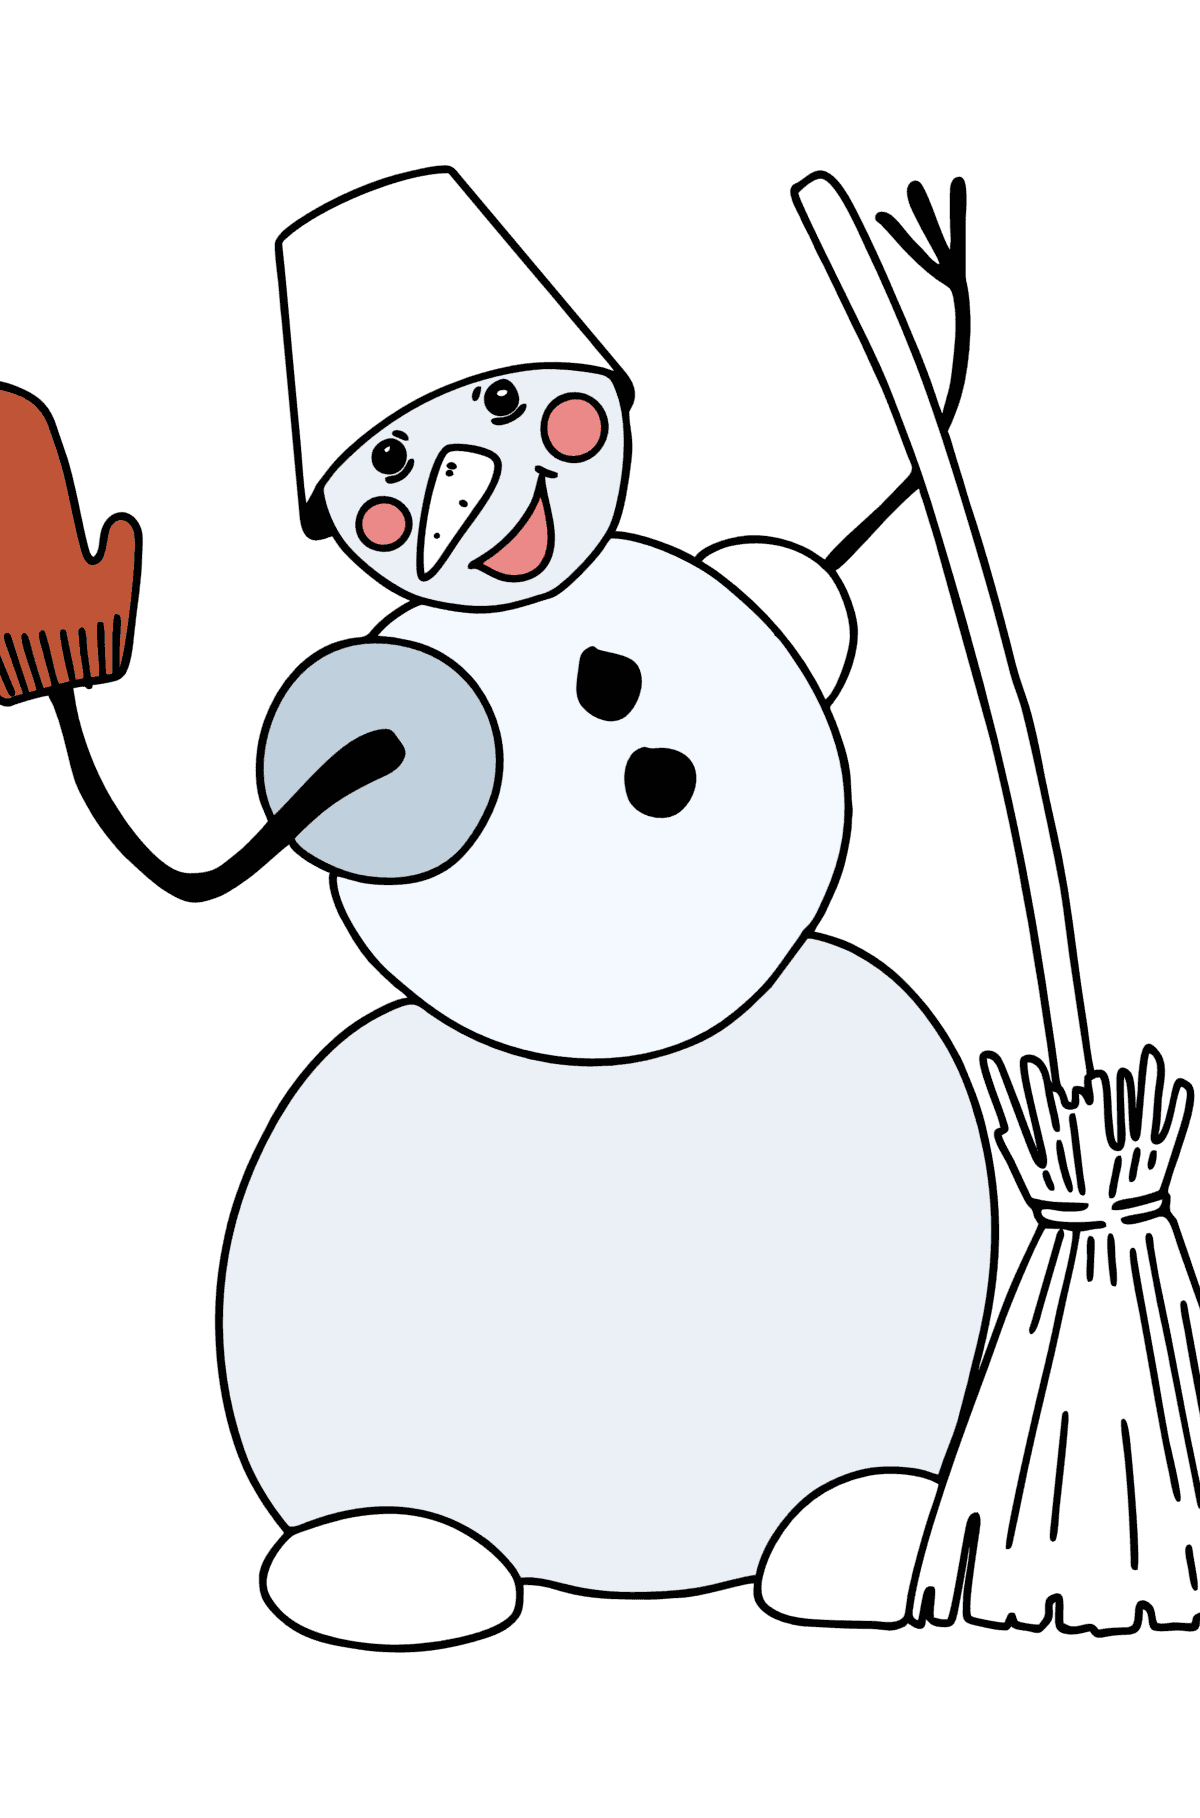 Desenho para colorir do boneco de neve com vassoura - Imagens para Colorir para Crianças